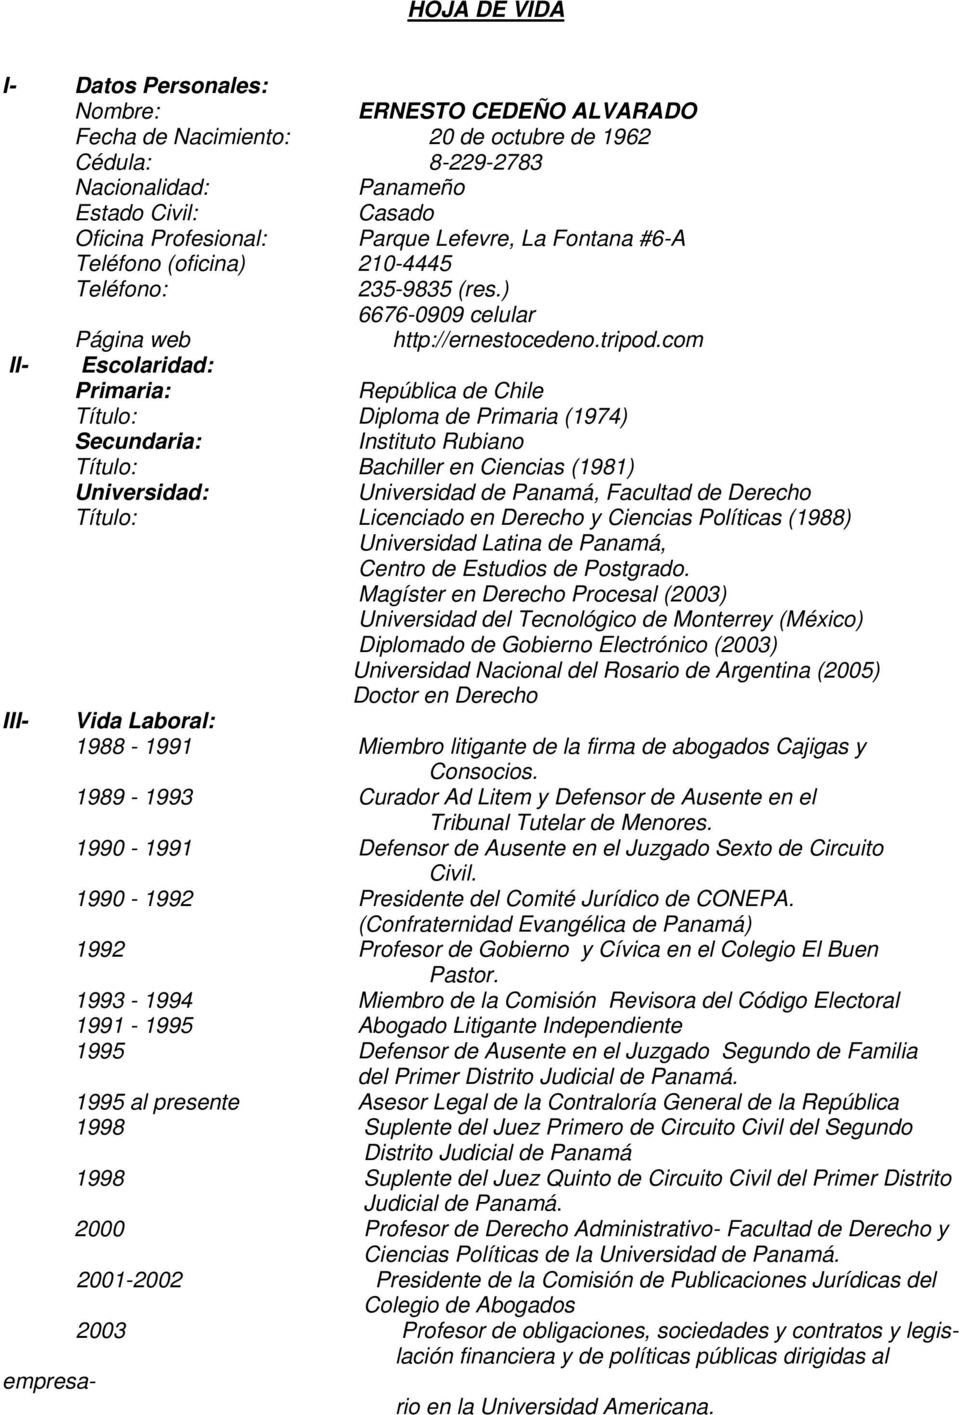 com II- Escolaridad: Primaria: República de Chile Título: Diploma de Primaria (1974) Secundaria: Instituto Rubiano Título: Bachiller en Ciencias (1981) Universidad: Universidad de Panamá, Facultad de